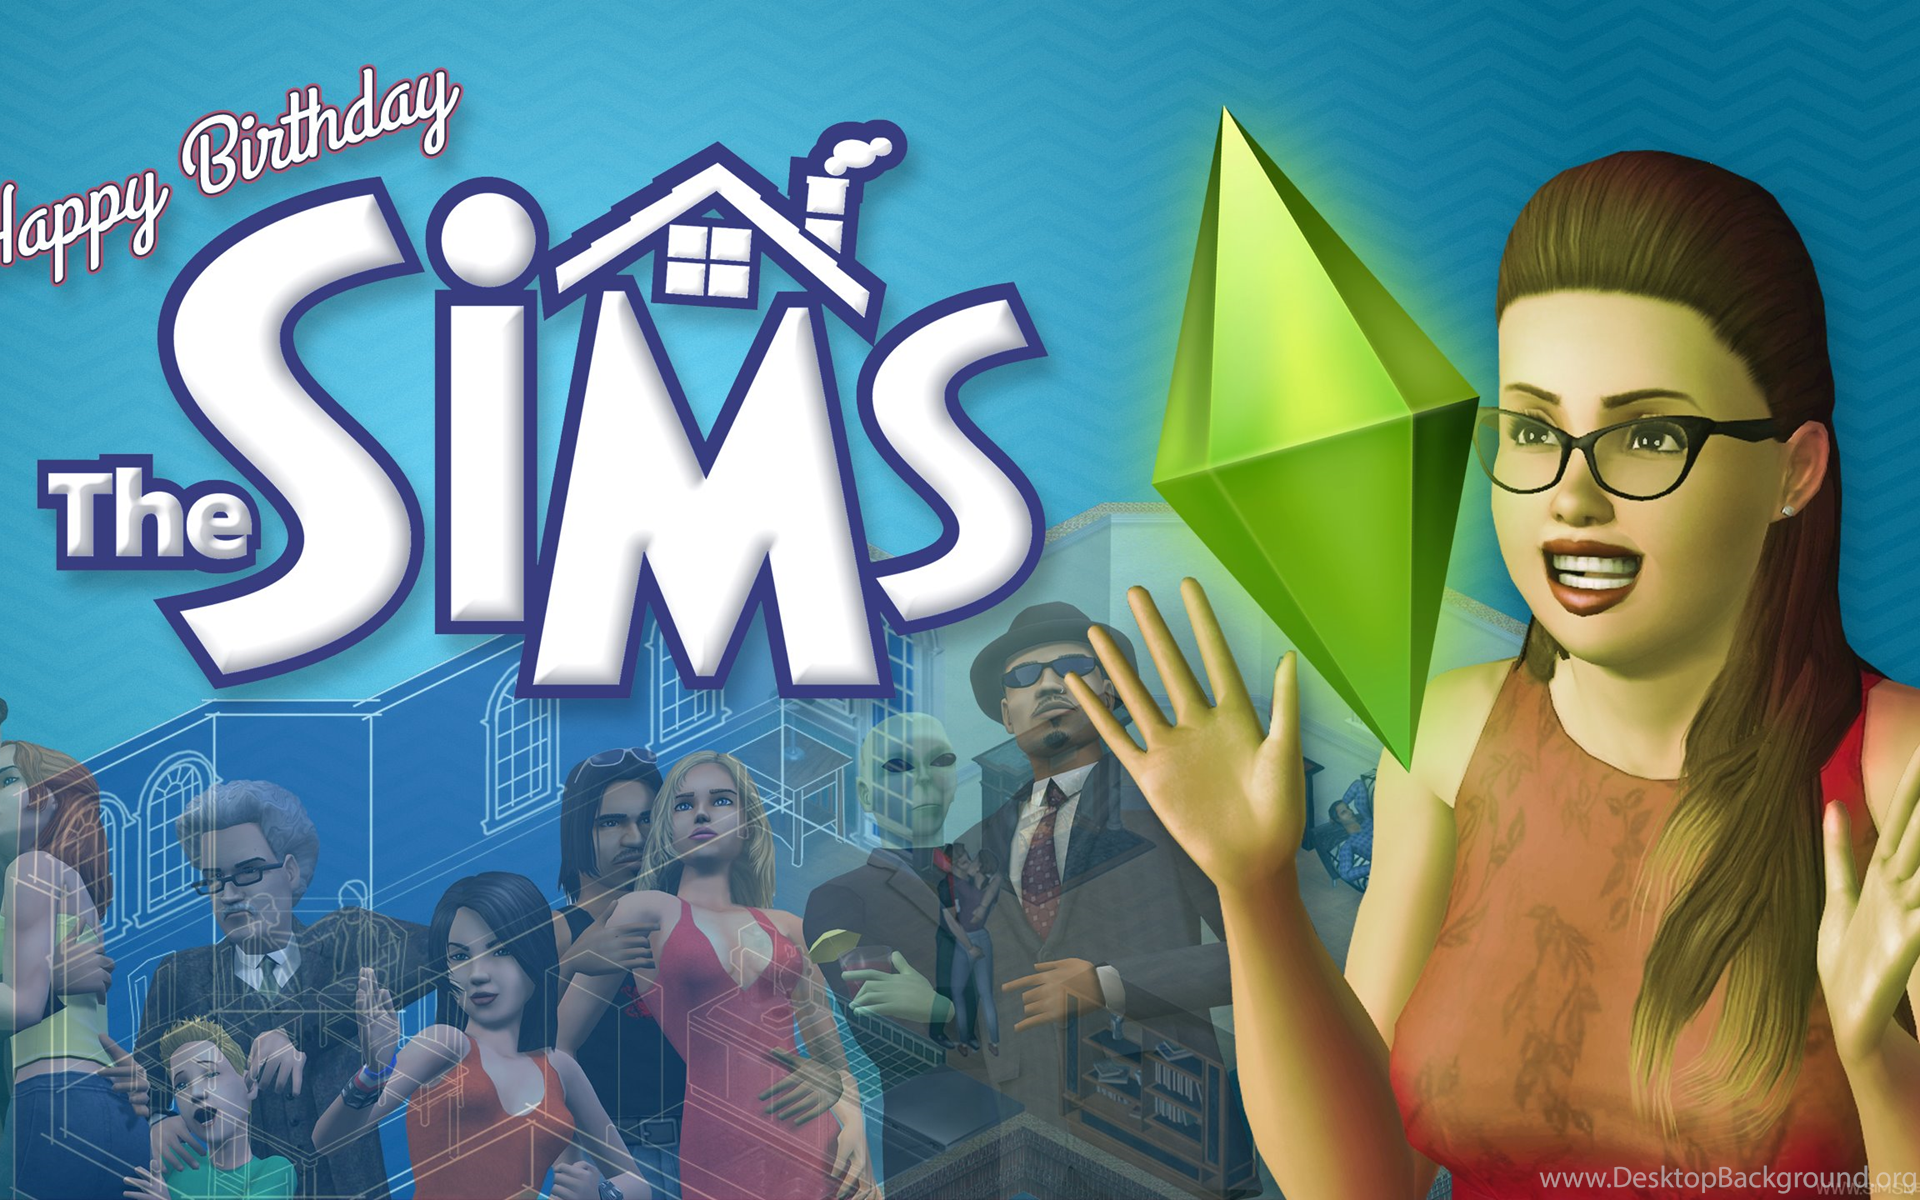 Sims 1 18. Игра SIMS 1. The SIMS 1 обложка. SIMS 4 обложка. SIMS 4 обложка игры.